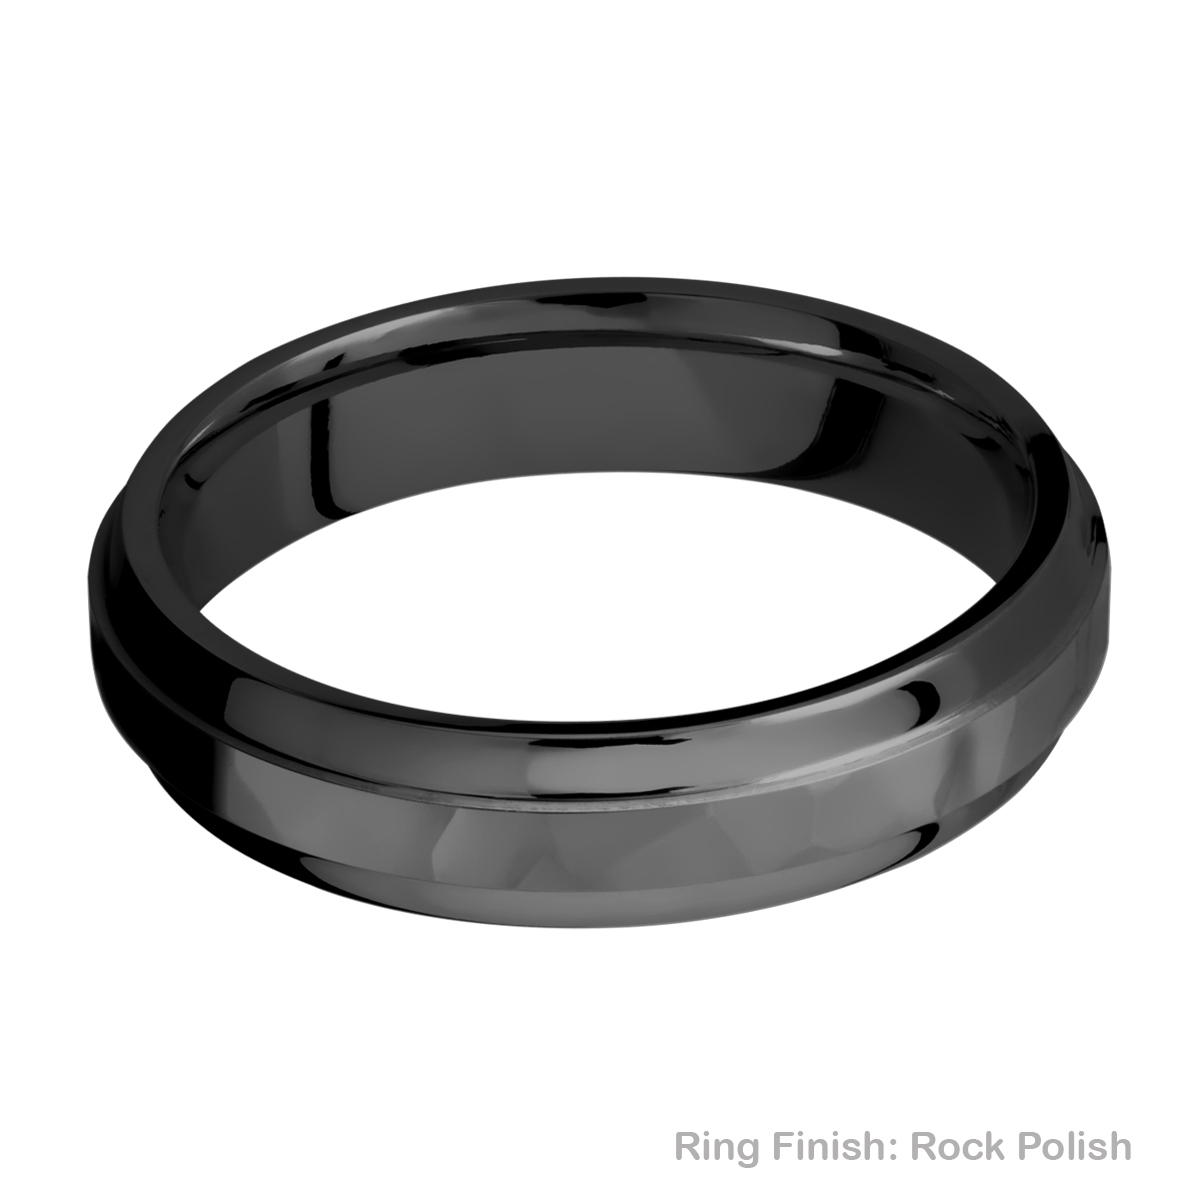 Lashbrook Z5B(S) Zirconium Wedding Ring or Band